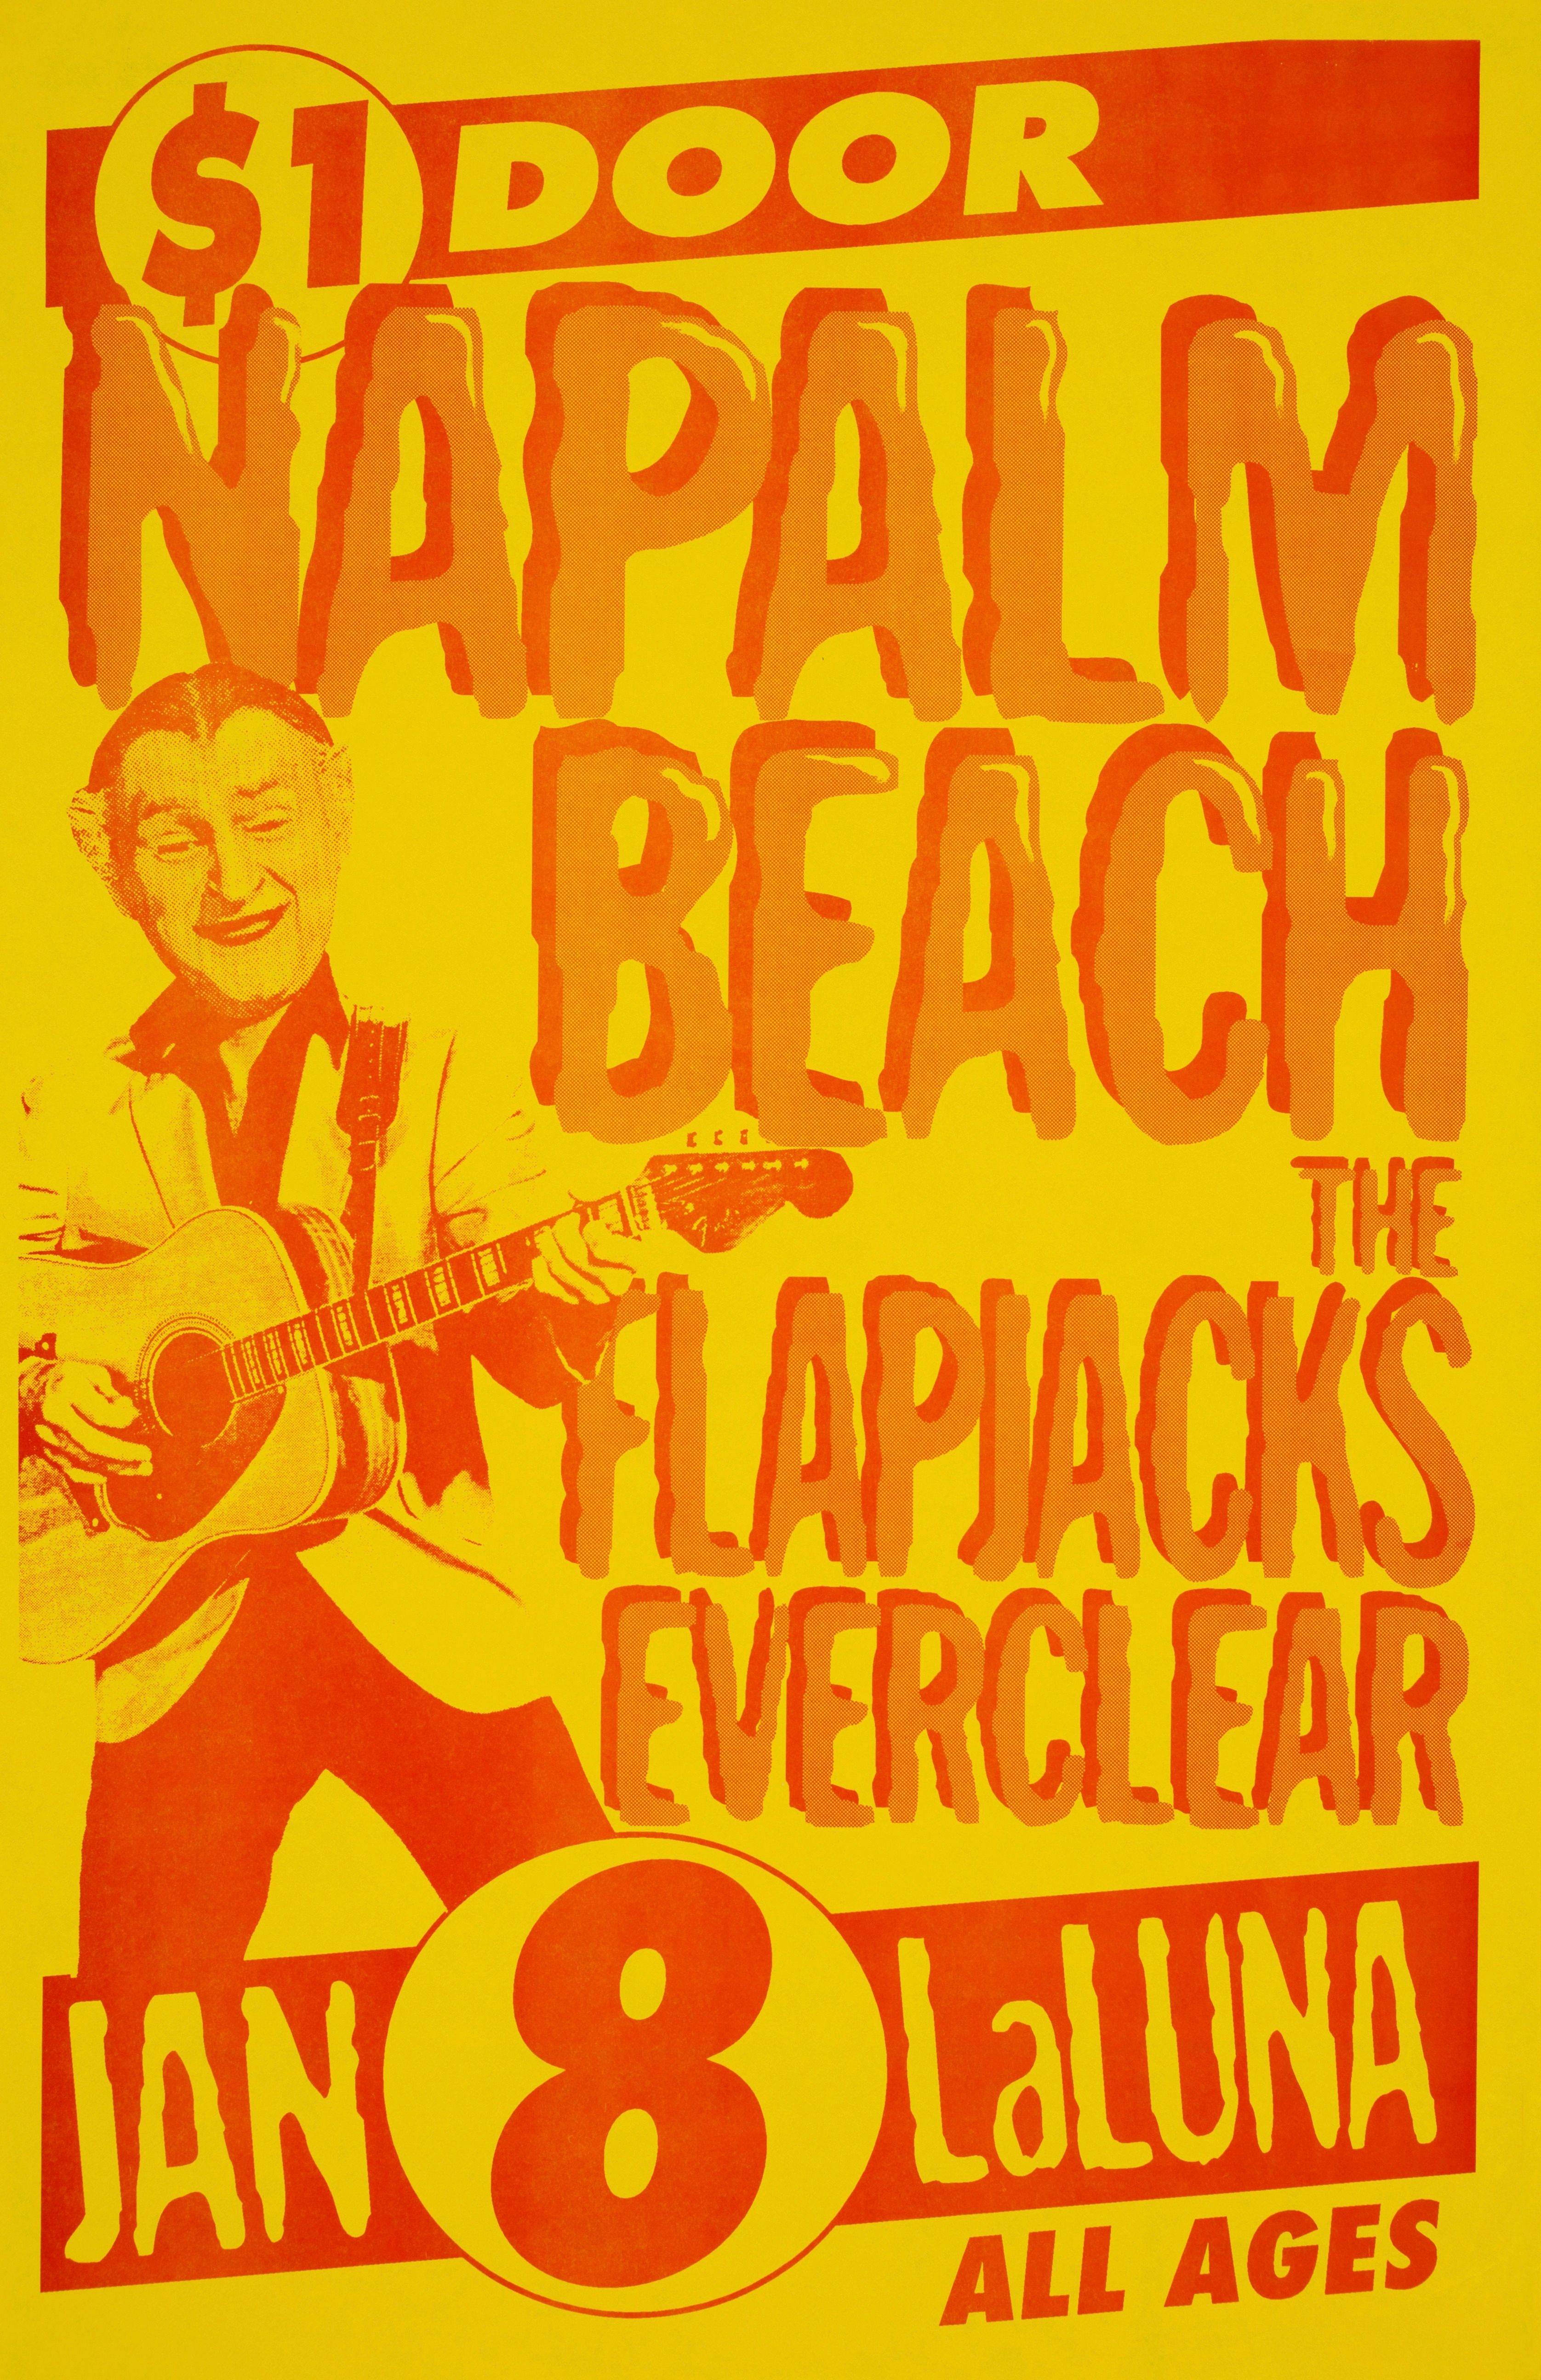 MXP-213.2 Napalm Beach 1997 La Luna  Jan 8 Concert Poster